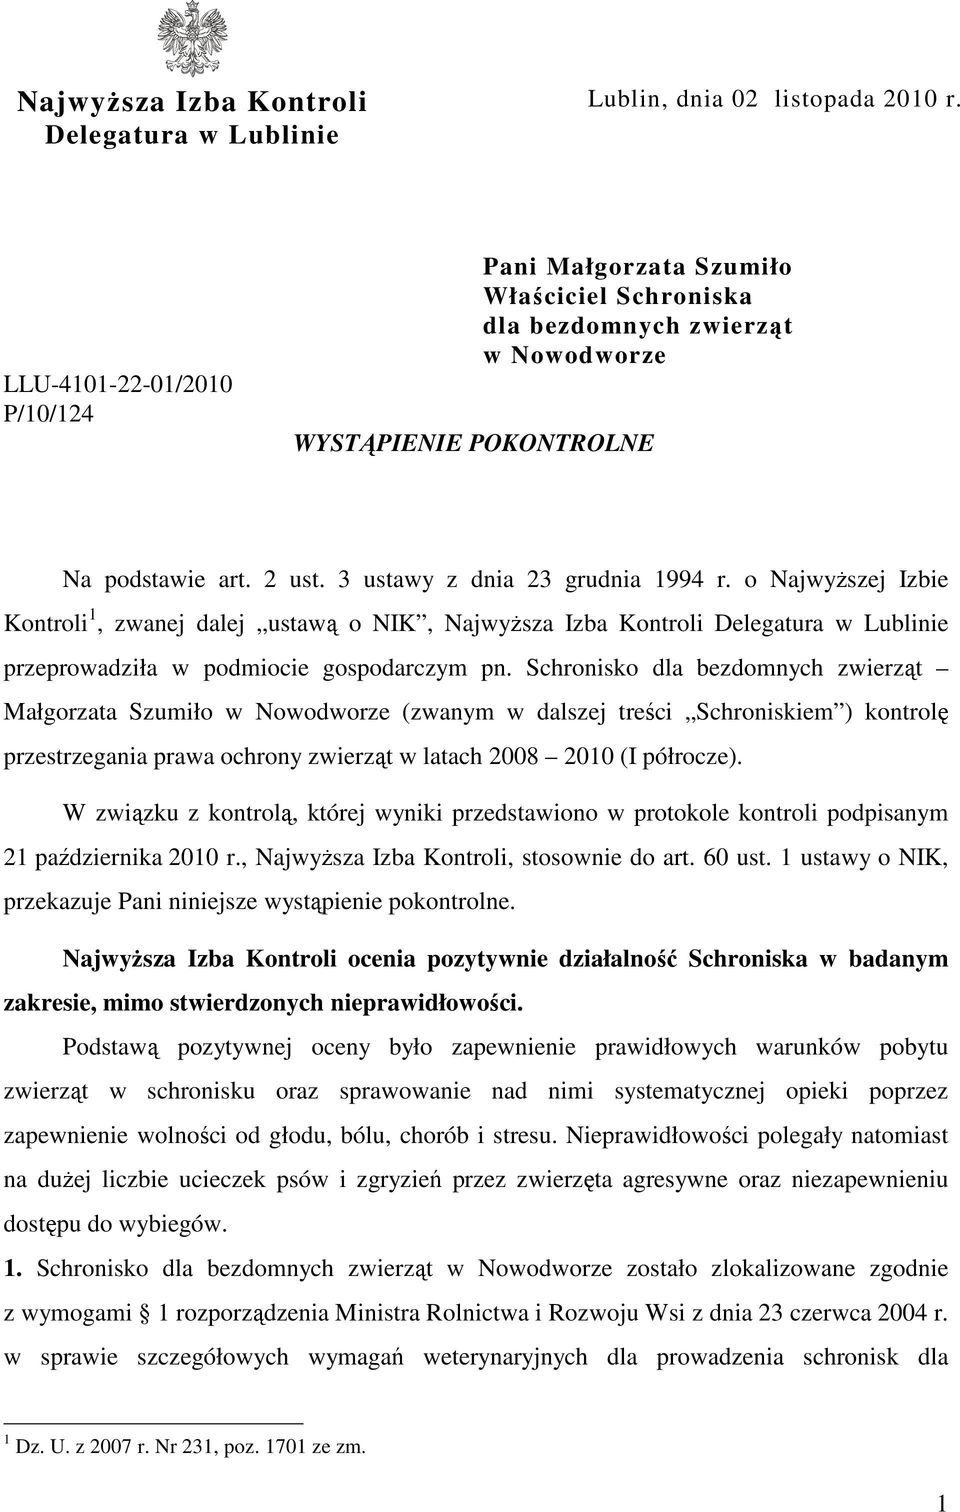 o Najwyższej Izbie Kontroli 1, zwanej dalej ustawą o NIK, Najwyższa Izba Kontroli Delegatura w Lublinie przeprowadziła w podmiocie gospodarczym pn.